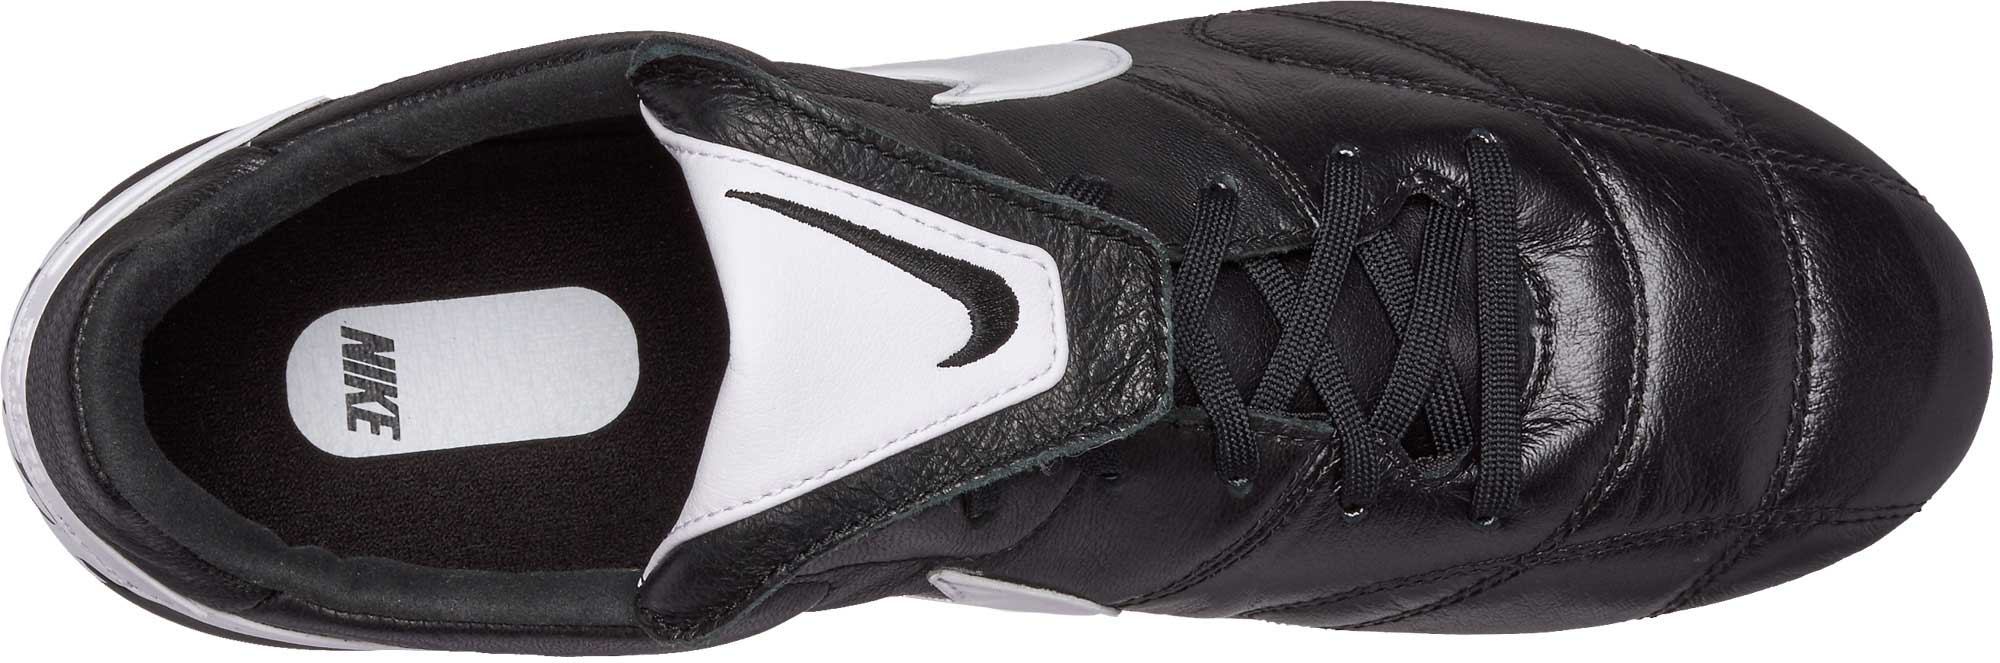 Nike Premier II FG Soccer Cleats - Black & White - Soccer Master